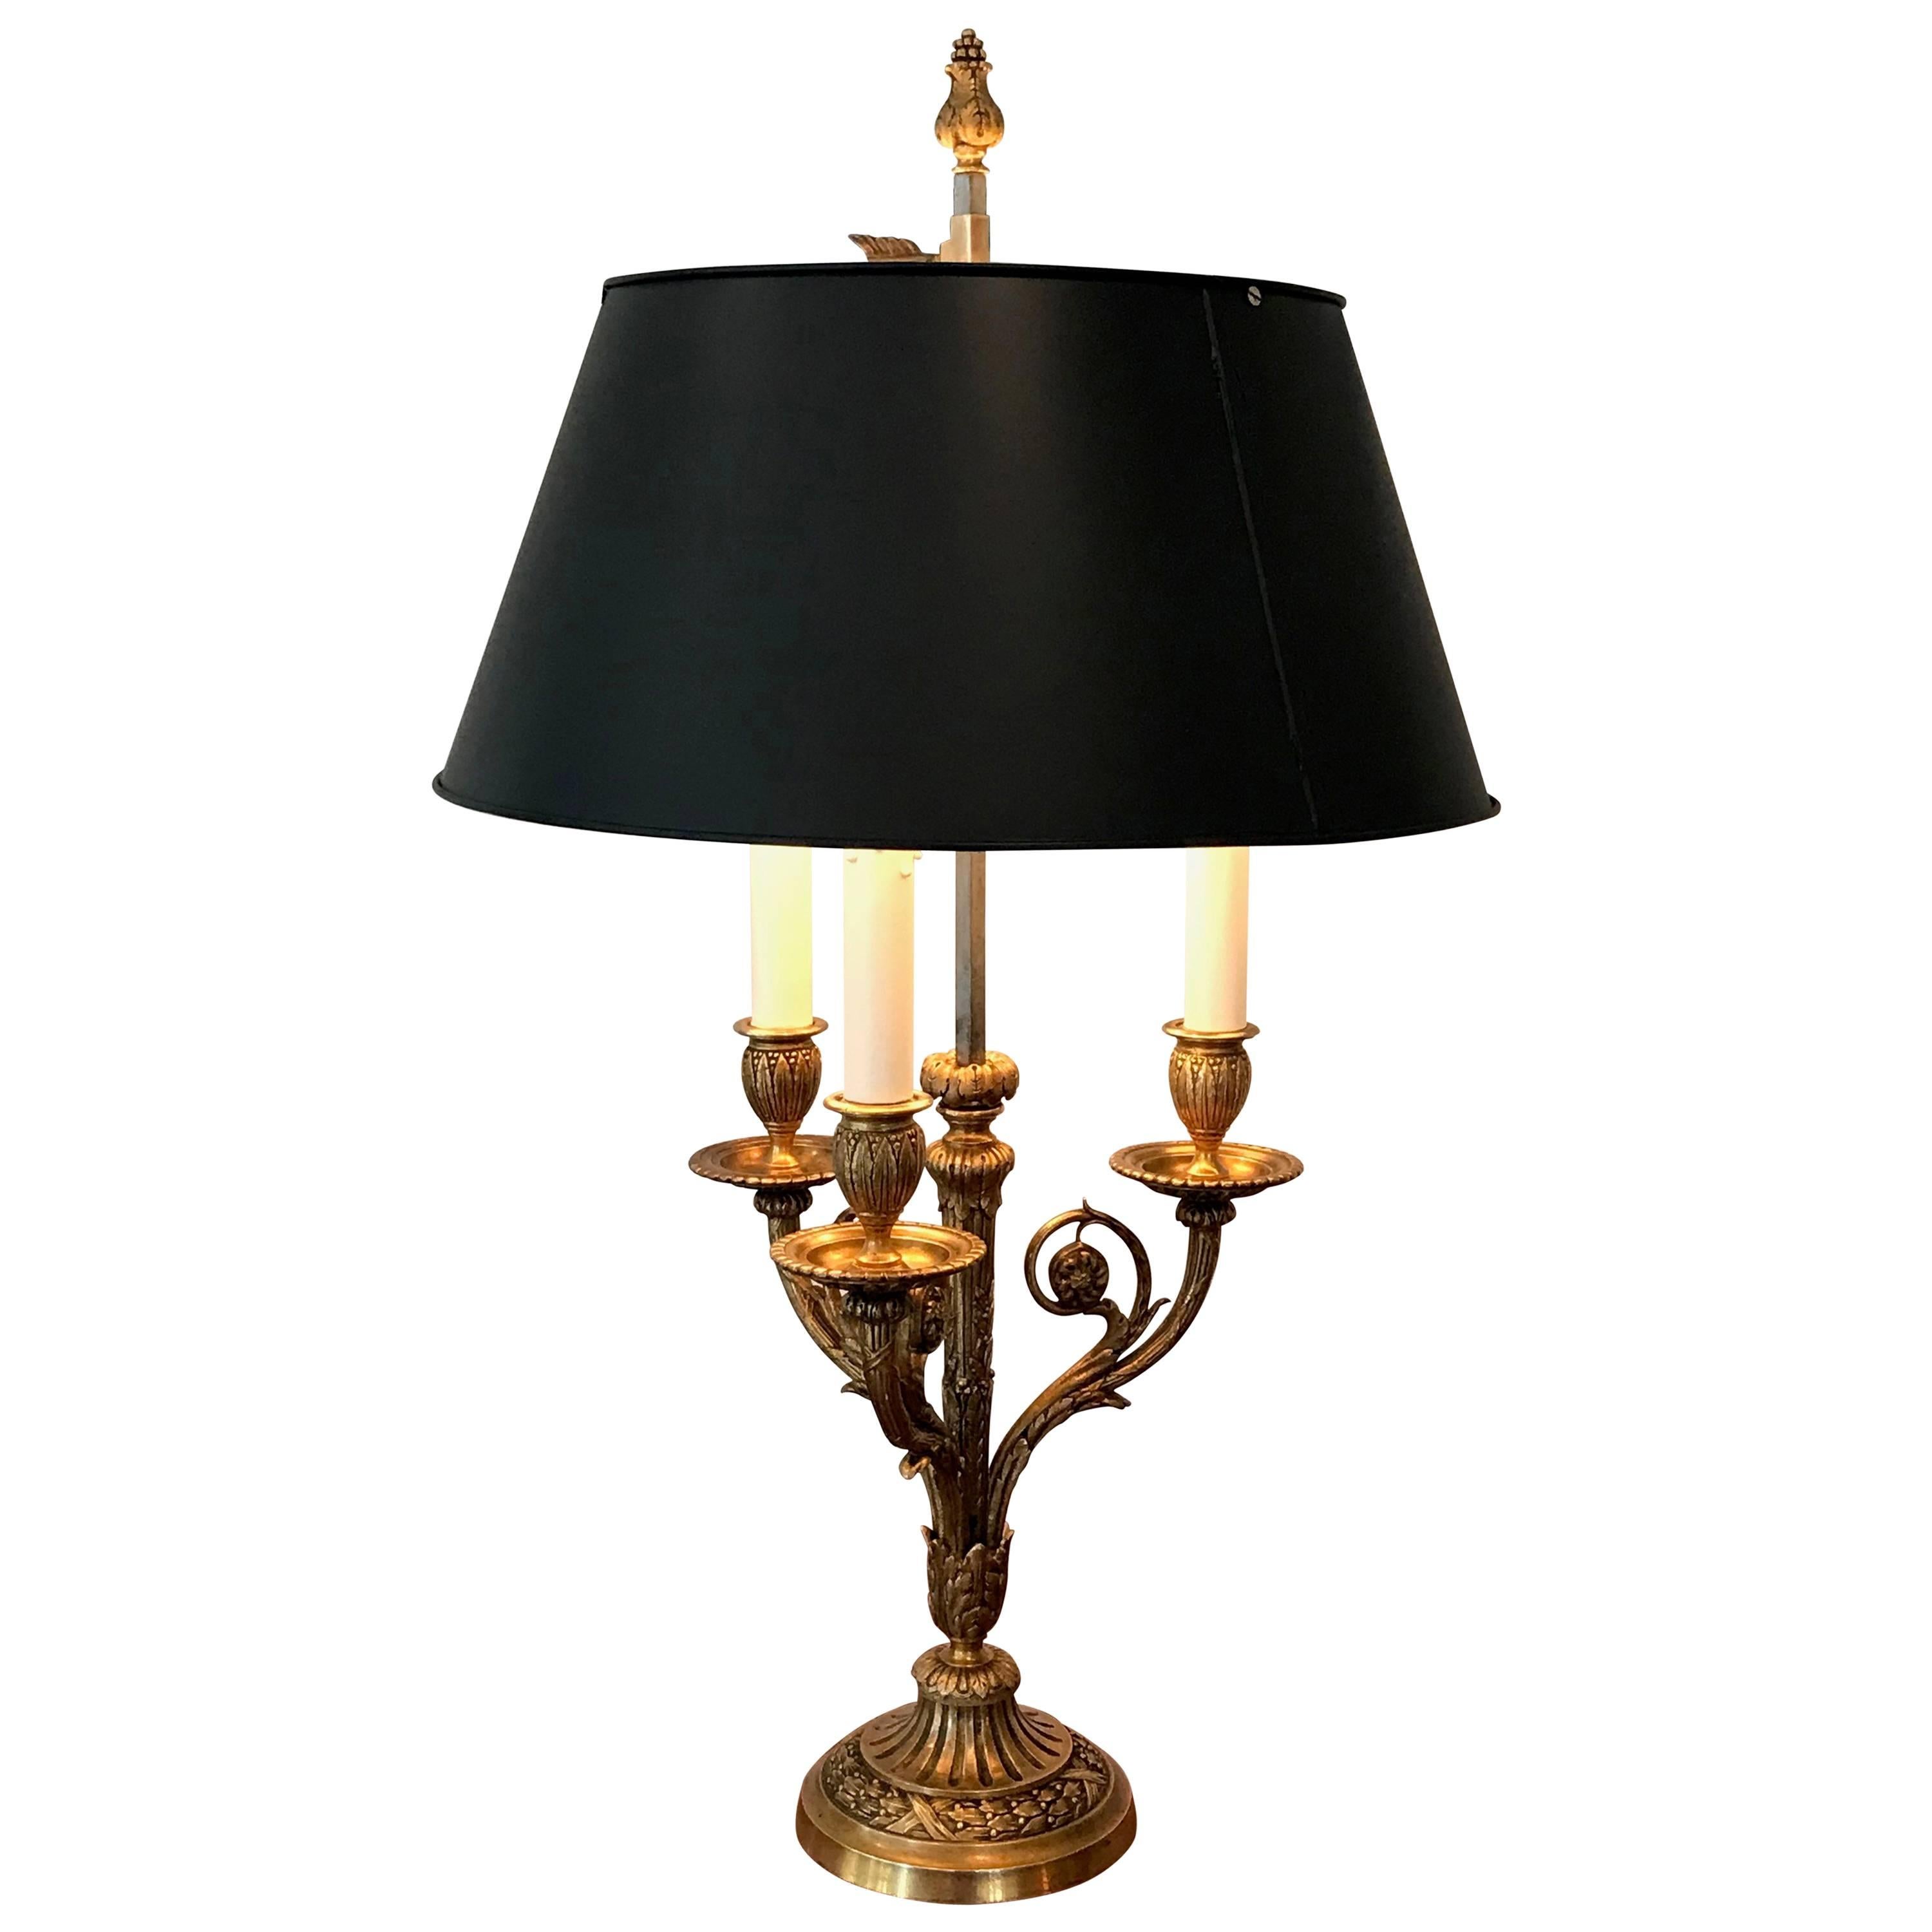 Fumiere et Cie French Doré Bronze Bouillotte Lamp For Sale